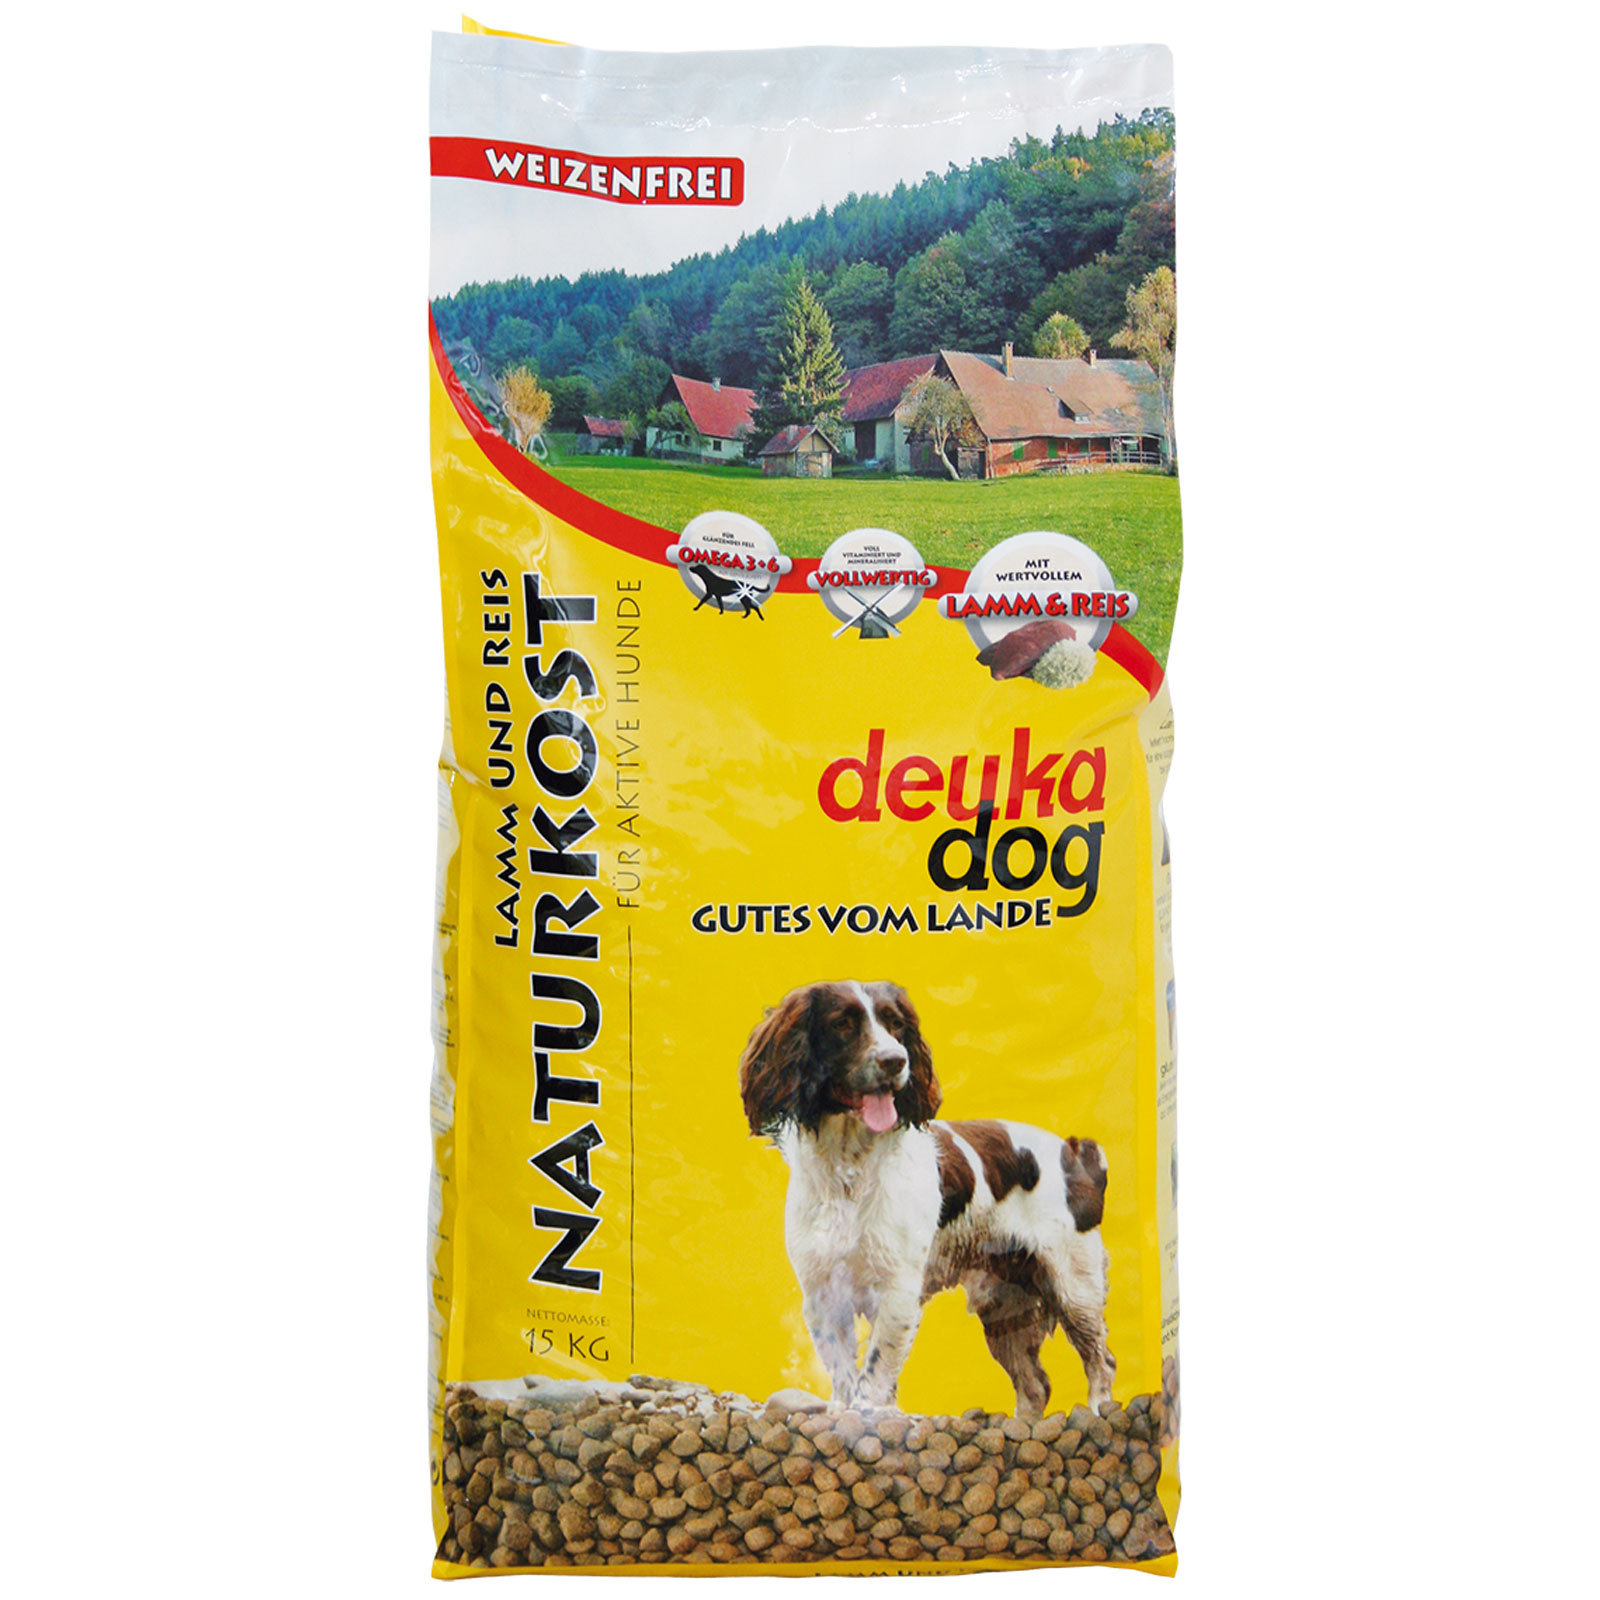 Deuka Dog food Naturkost wheat free 5 kg